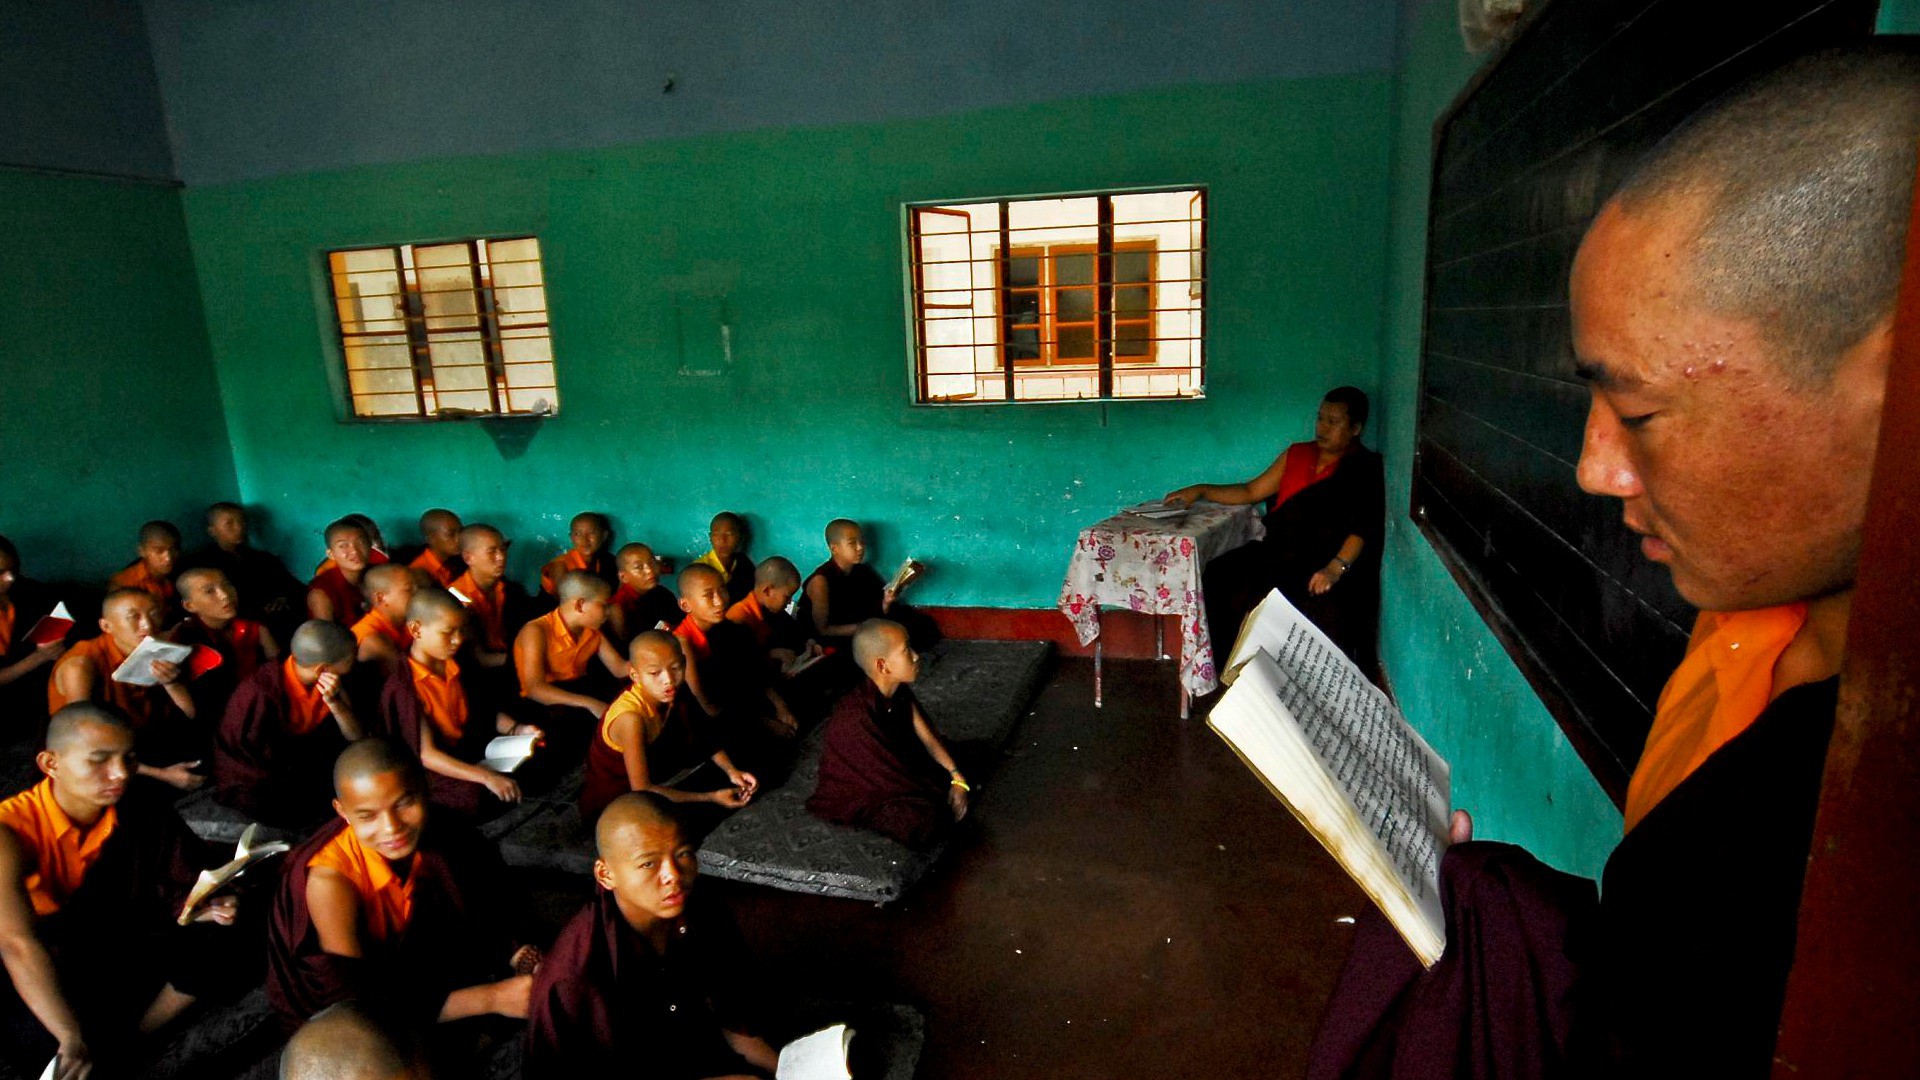 Le très bouddhiste Bhoutan restreint la liberté religieuse des chrétiens (Photo:le cercle/Flickr/CC BY-NC-SA 2.0)